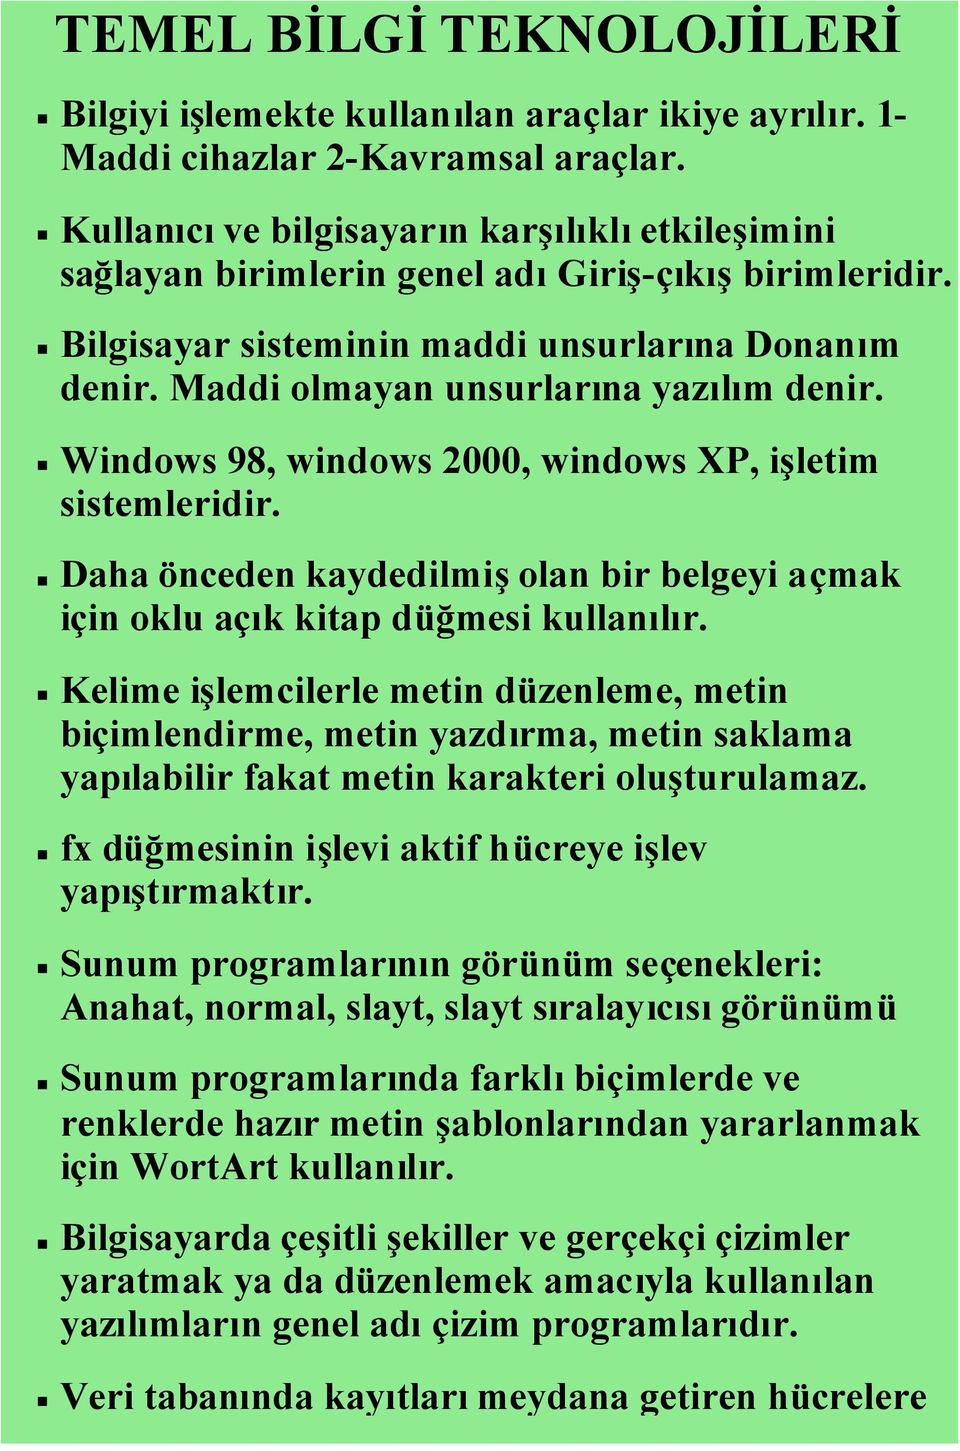 Windows 98, windows 2000, windows XP, işletim sistemleridir. Daha önceden kaydedilmişolan bir belgeyi açmak için oklu açık kitap düğmesi kullanılır.